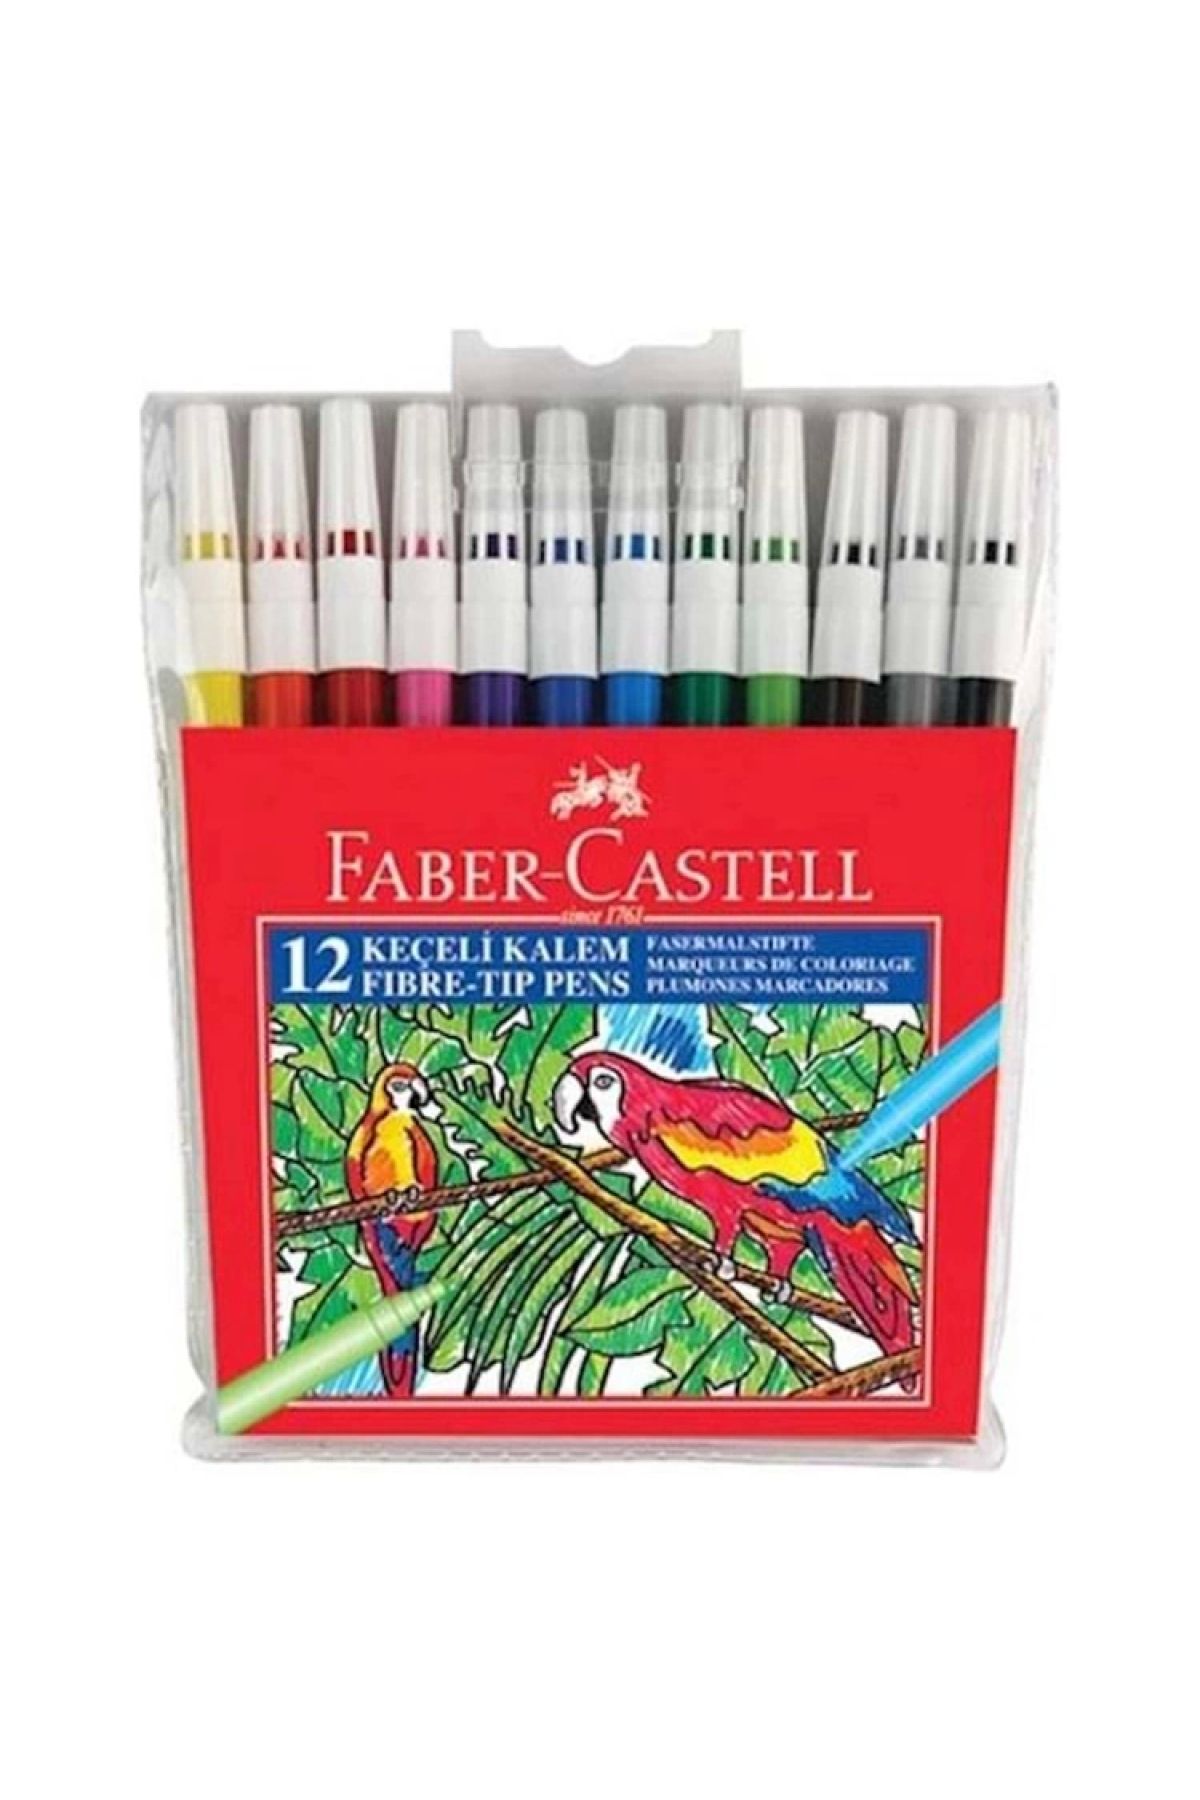 Faber Castell Yıkanabilir Keçeli Kalem12'lı